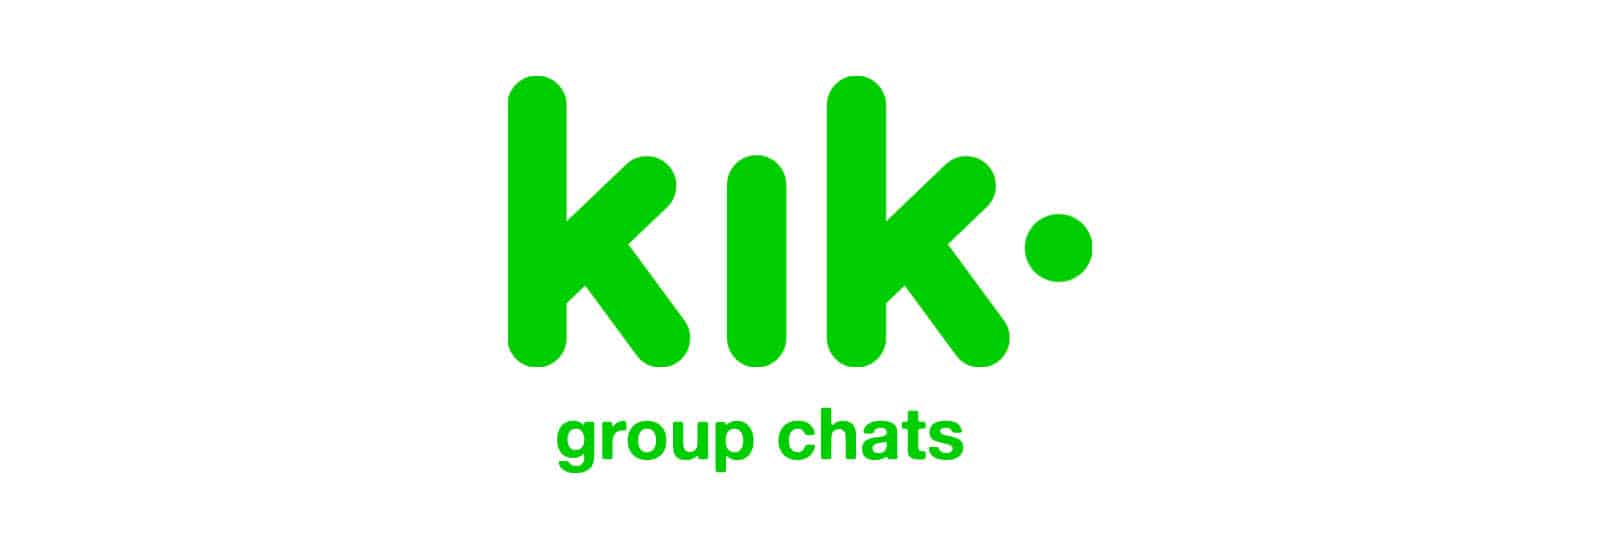 al dello russo recommends bi kik group chats pic